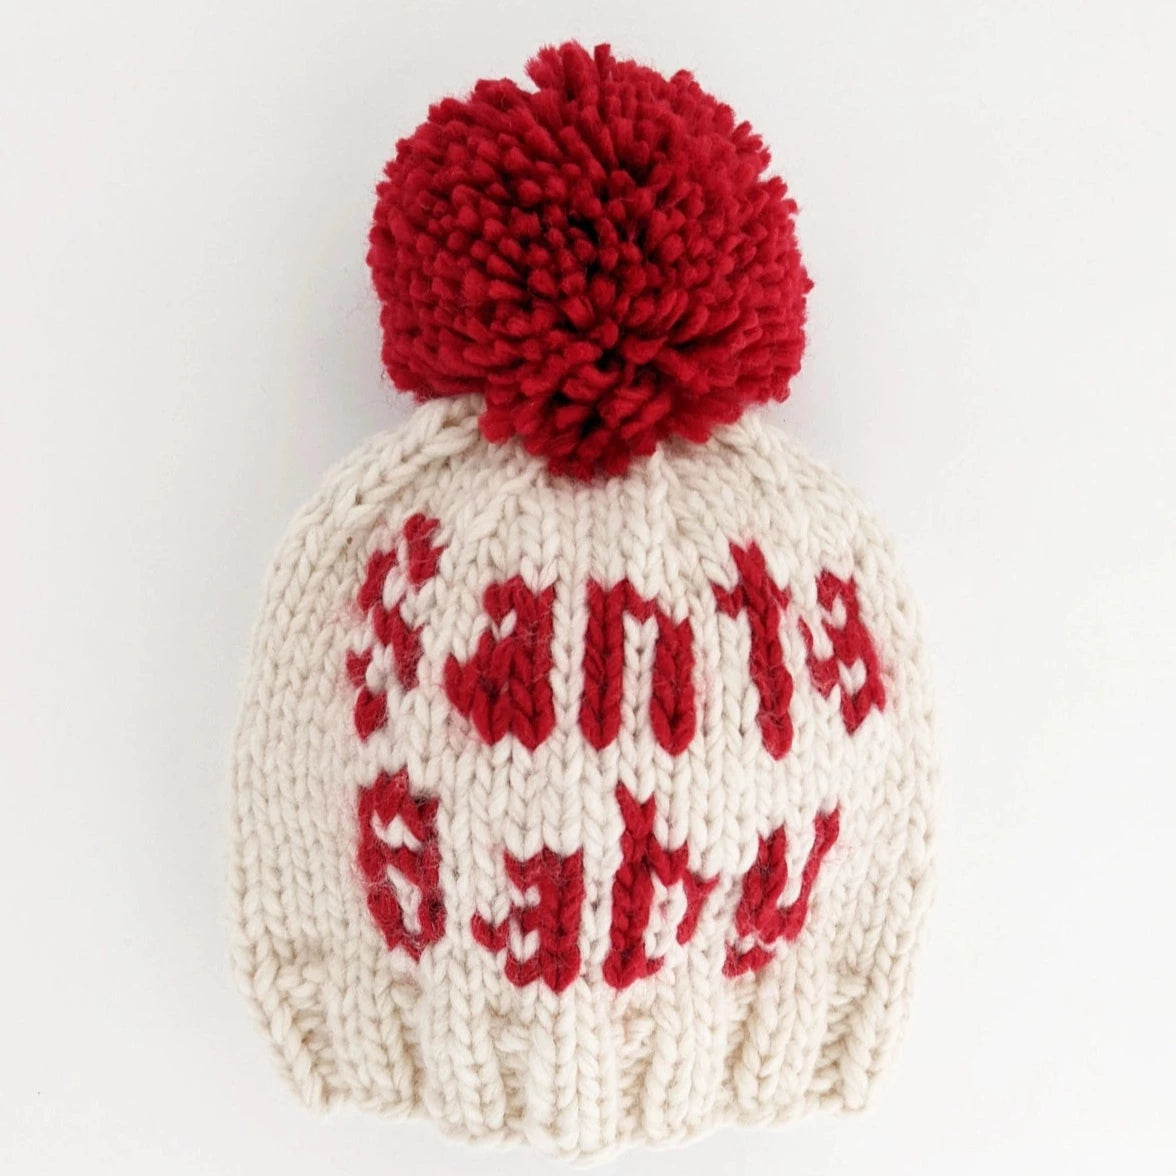 Santa Baby Hat